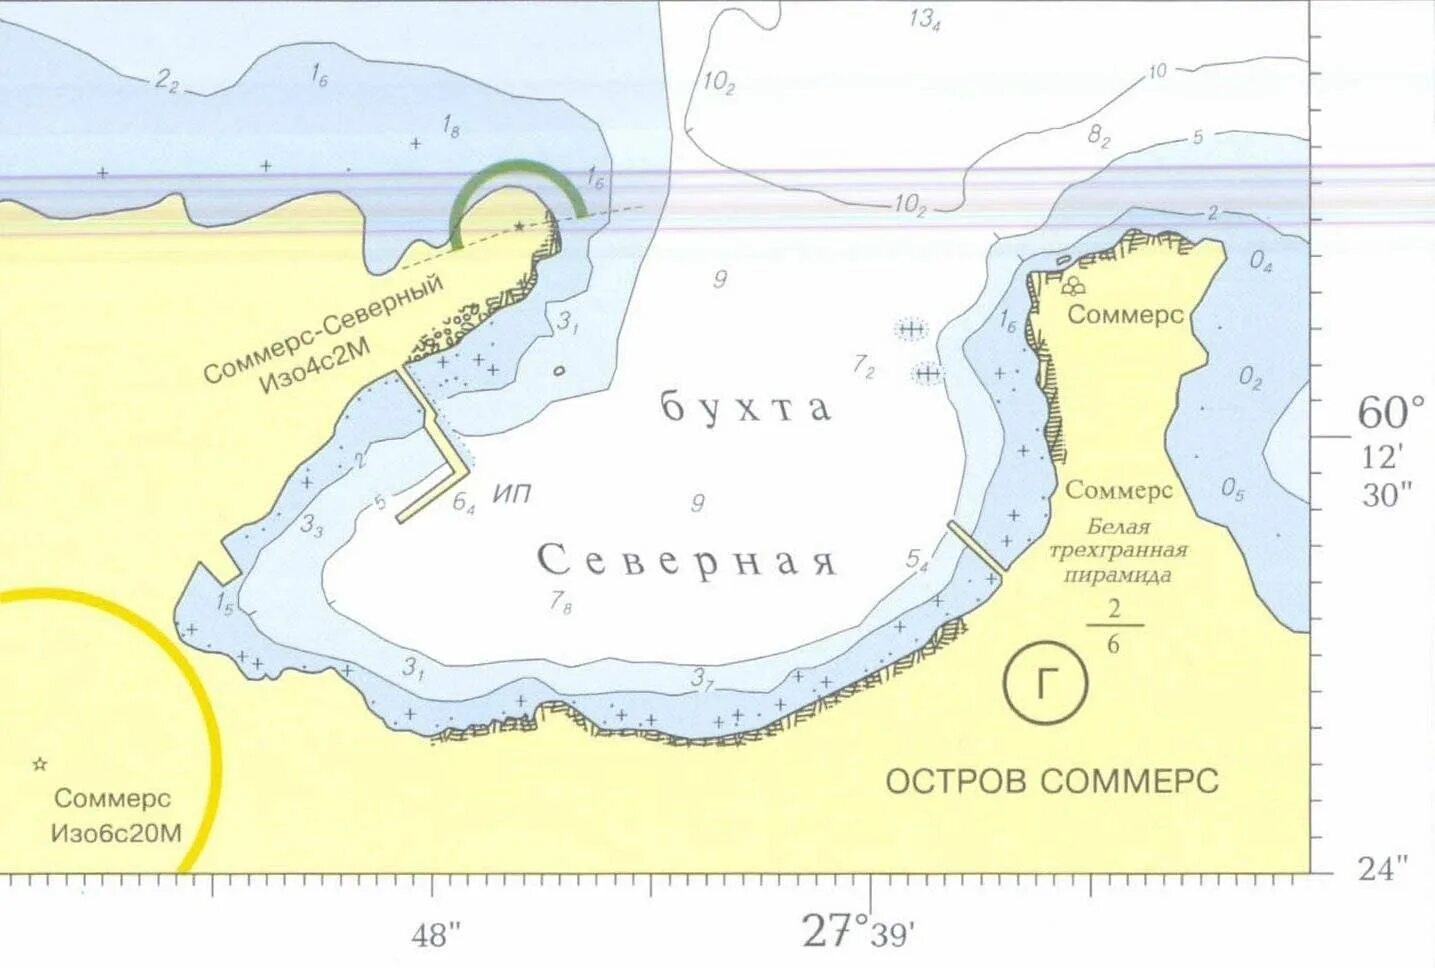 Название островов финского залива. Остров Соммерс в финском заливе на карте. Остров Гогланд в финском заливе. Остров Гогланд в финском заливе на карте. Остров Соммерс 1942.